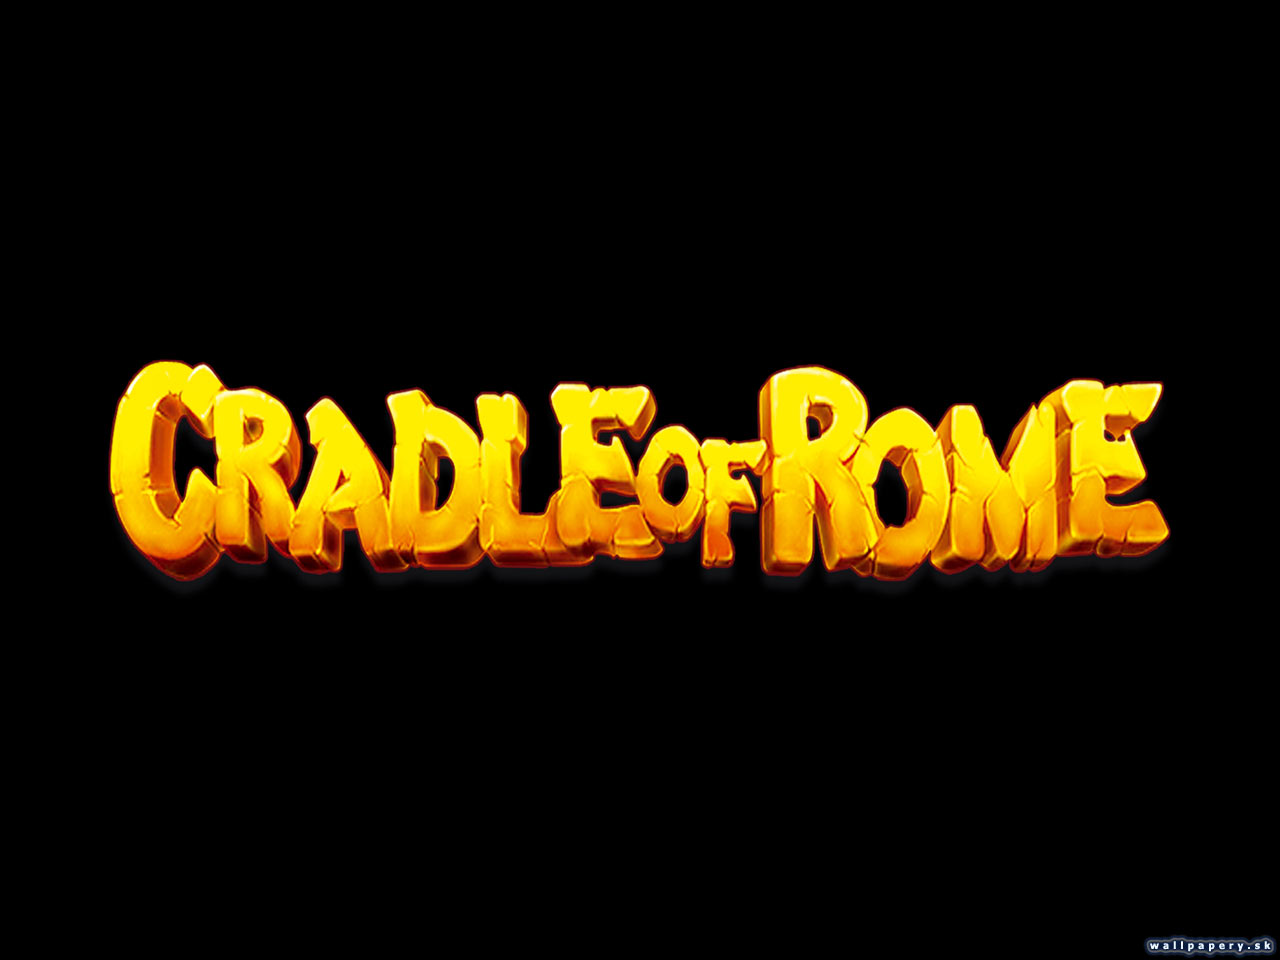 Cradle Of Rome - wallpaper 3